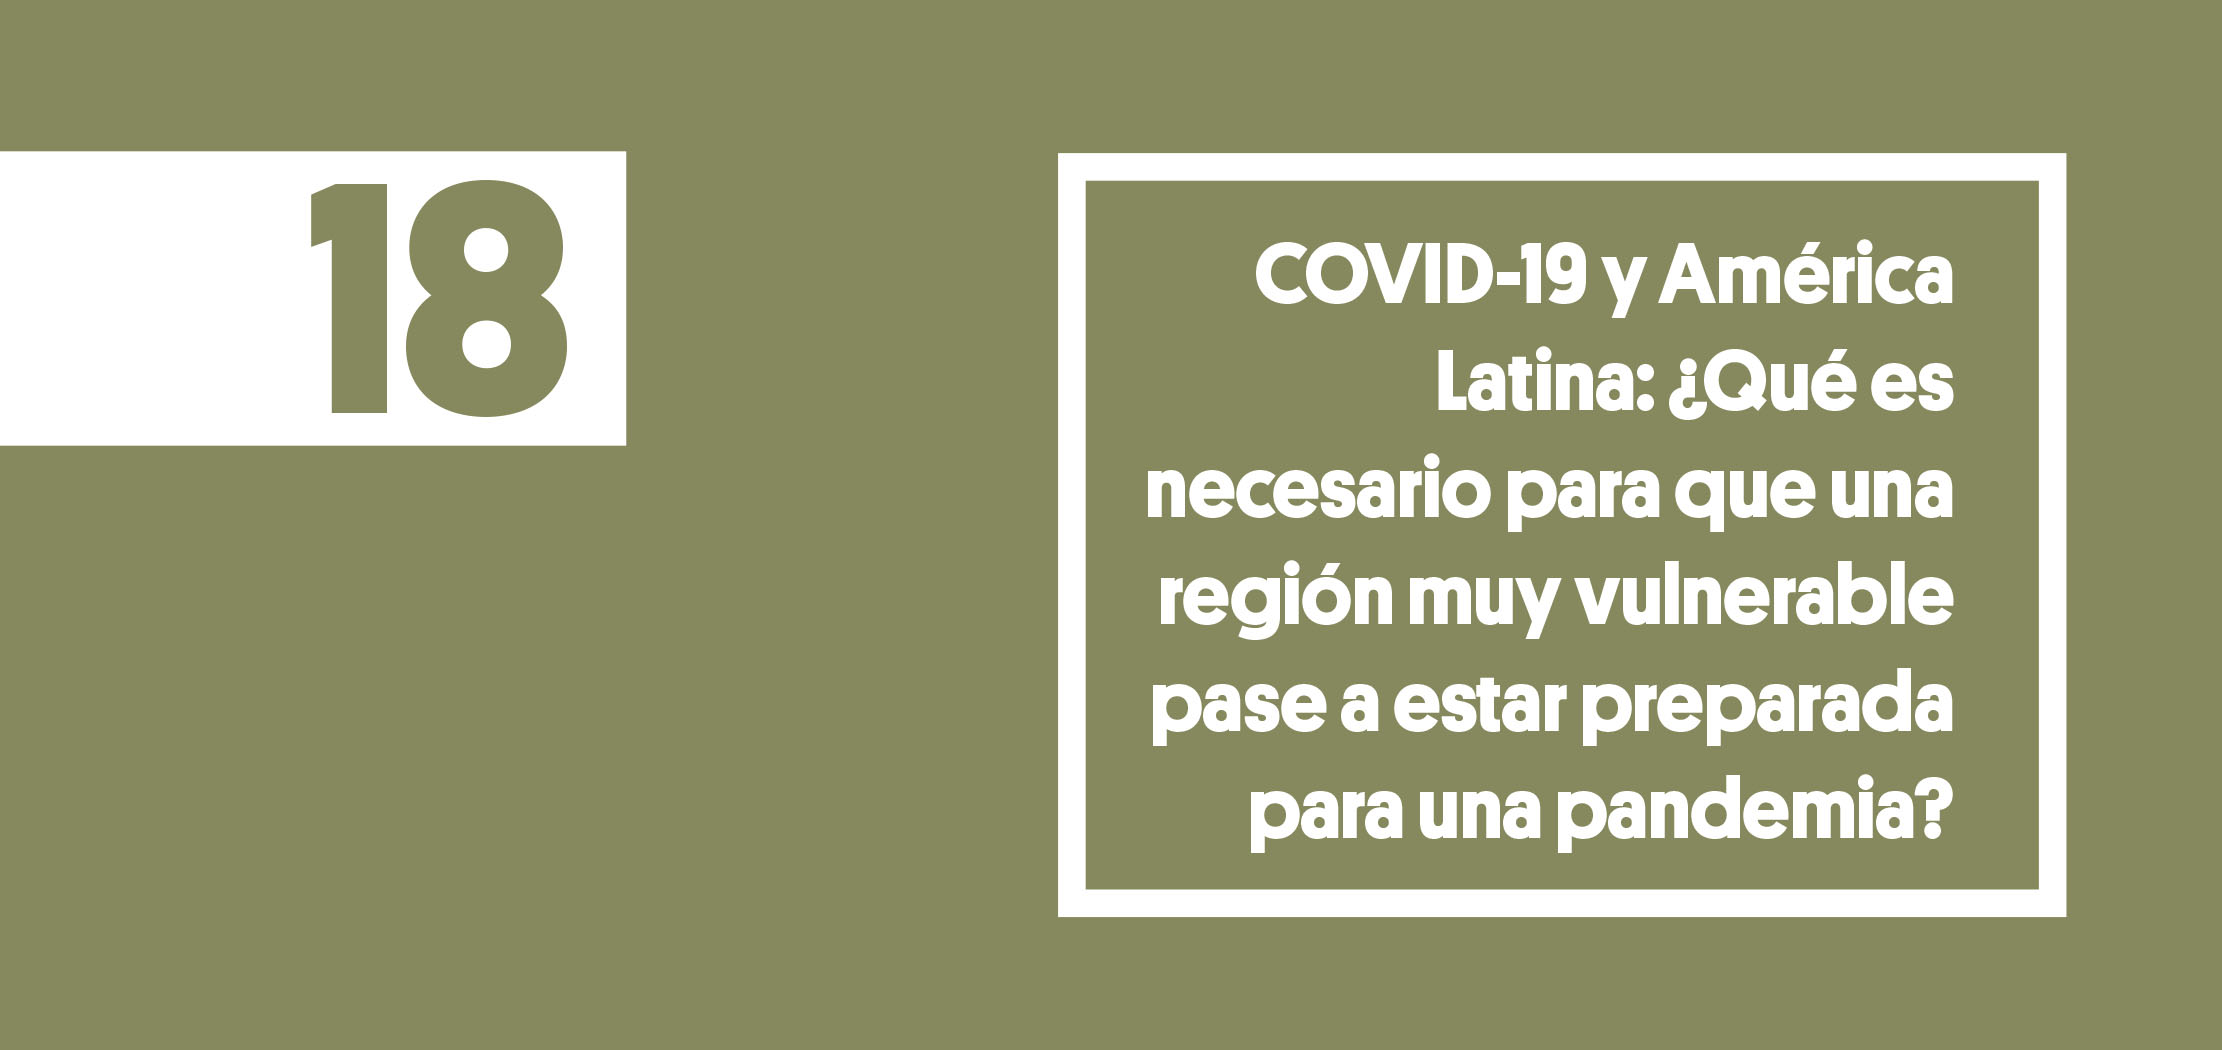 COVID-19 y América Latina: ¿Qué es necesario para que una región muy vulnerable pase a estar preparada para una pandemia?